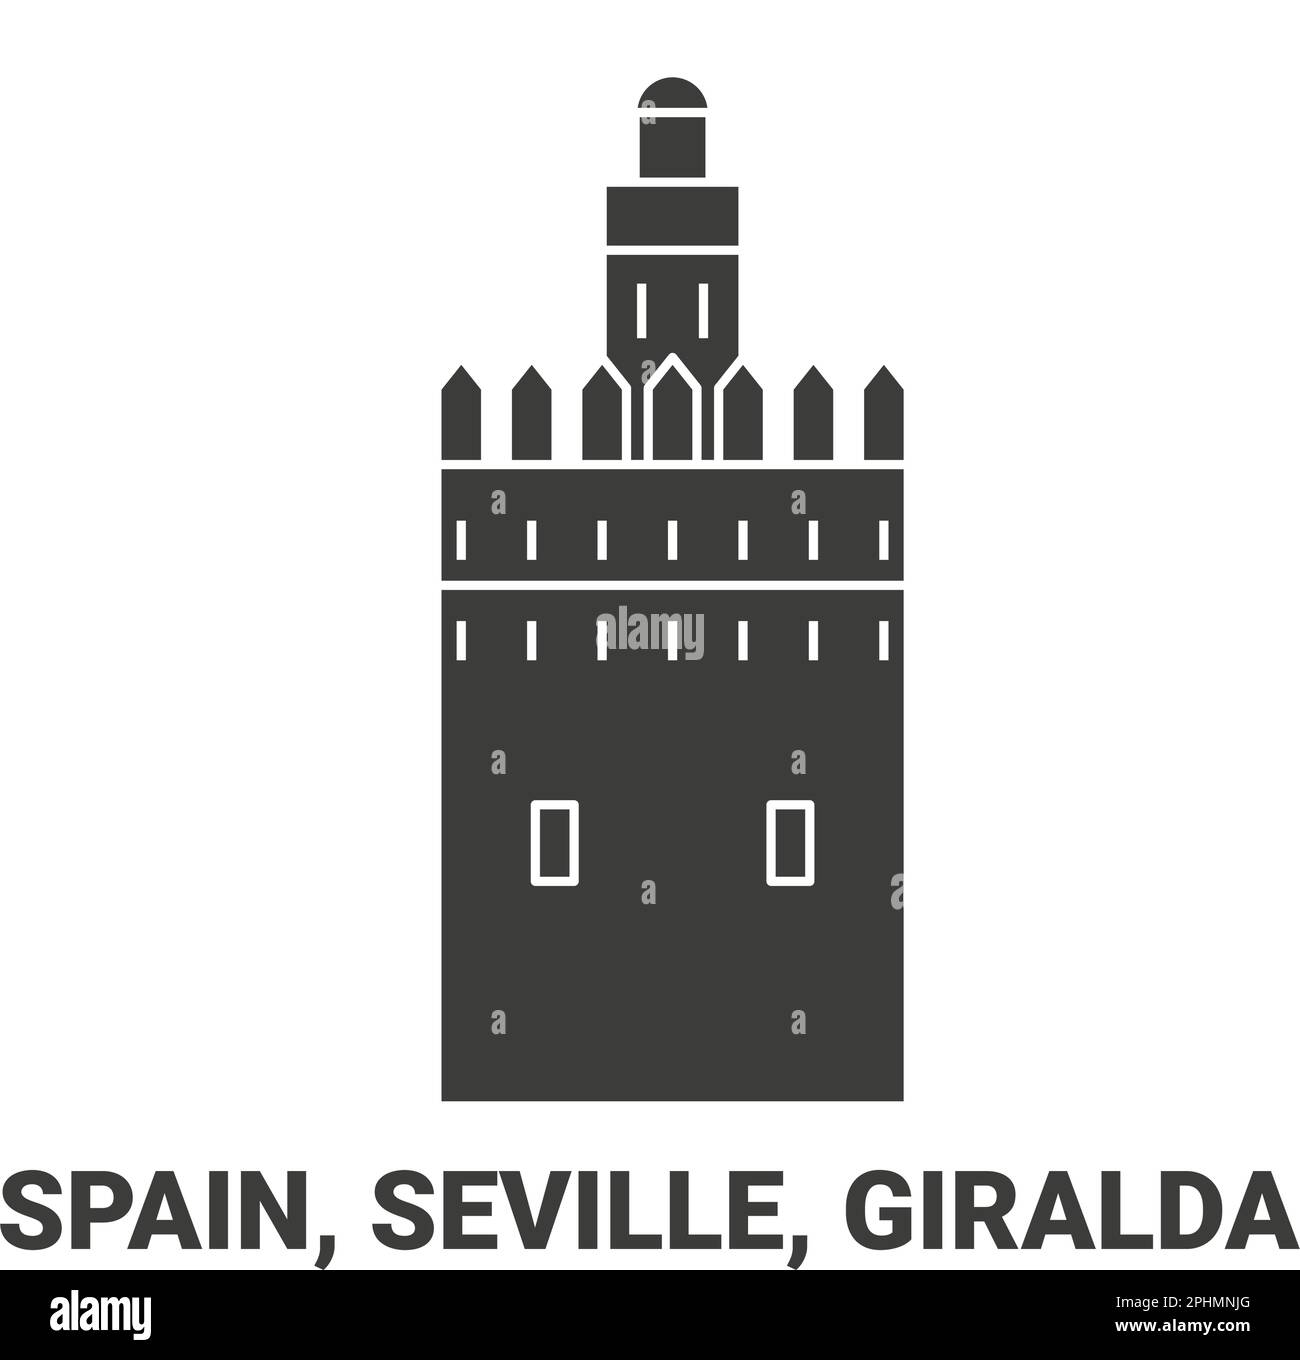 Spain, Seville, Giralda, travel landmark vector illustration Stock Vector